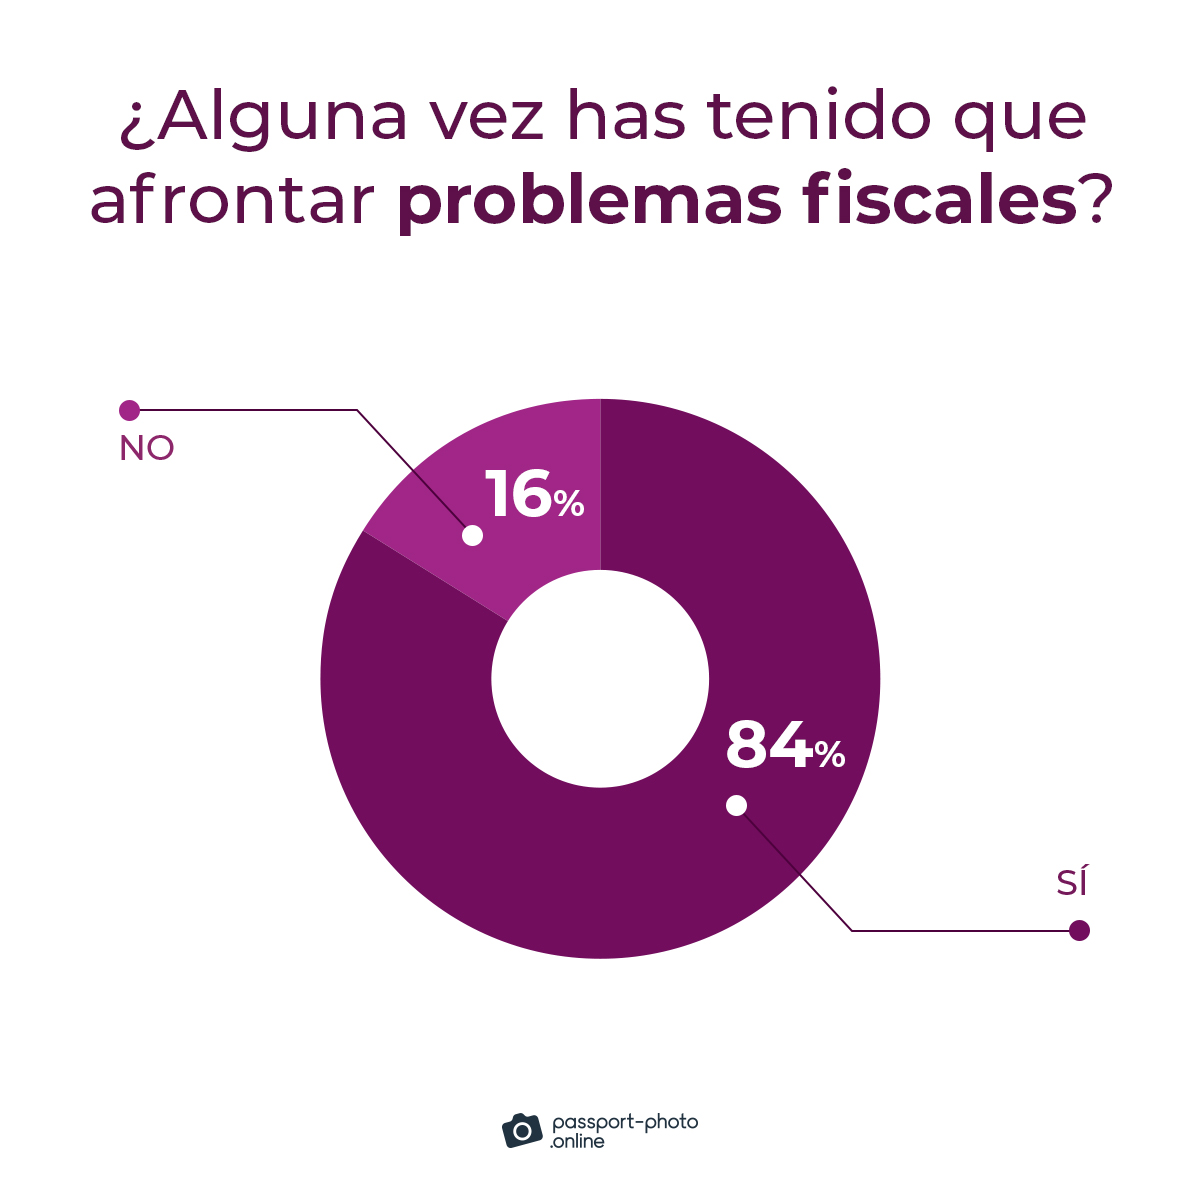 el 84% de los nomadas digitales afirman haberse enfrentado a problemas fiscales almenos una vez